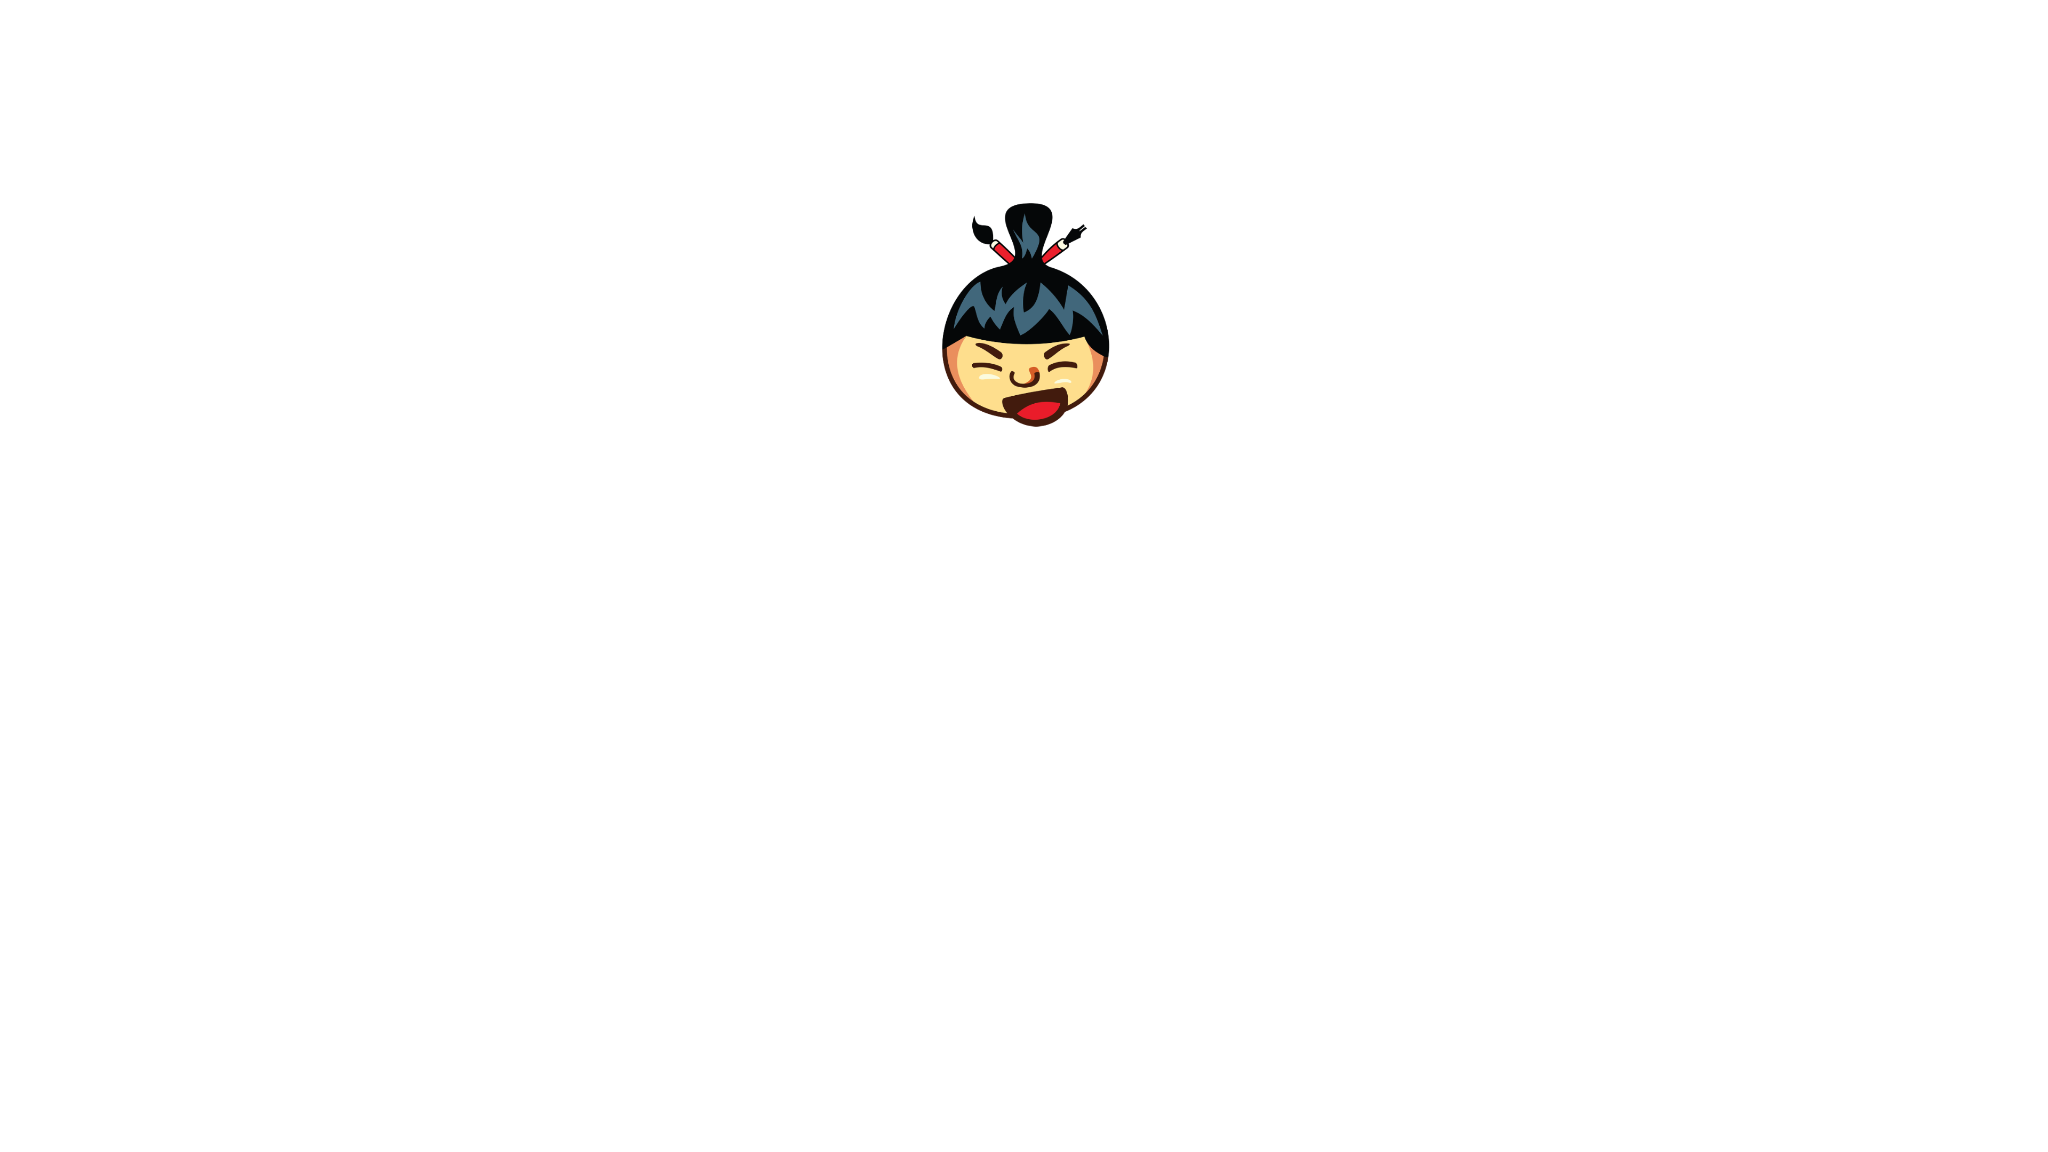 Sumo Video Intro - gemaakt door Lauri Koutaniemi met paint